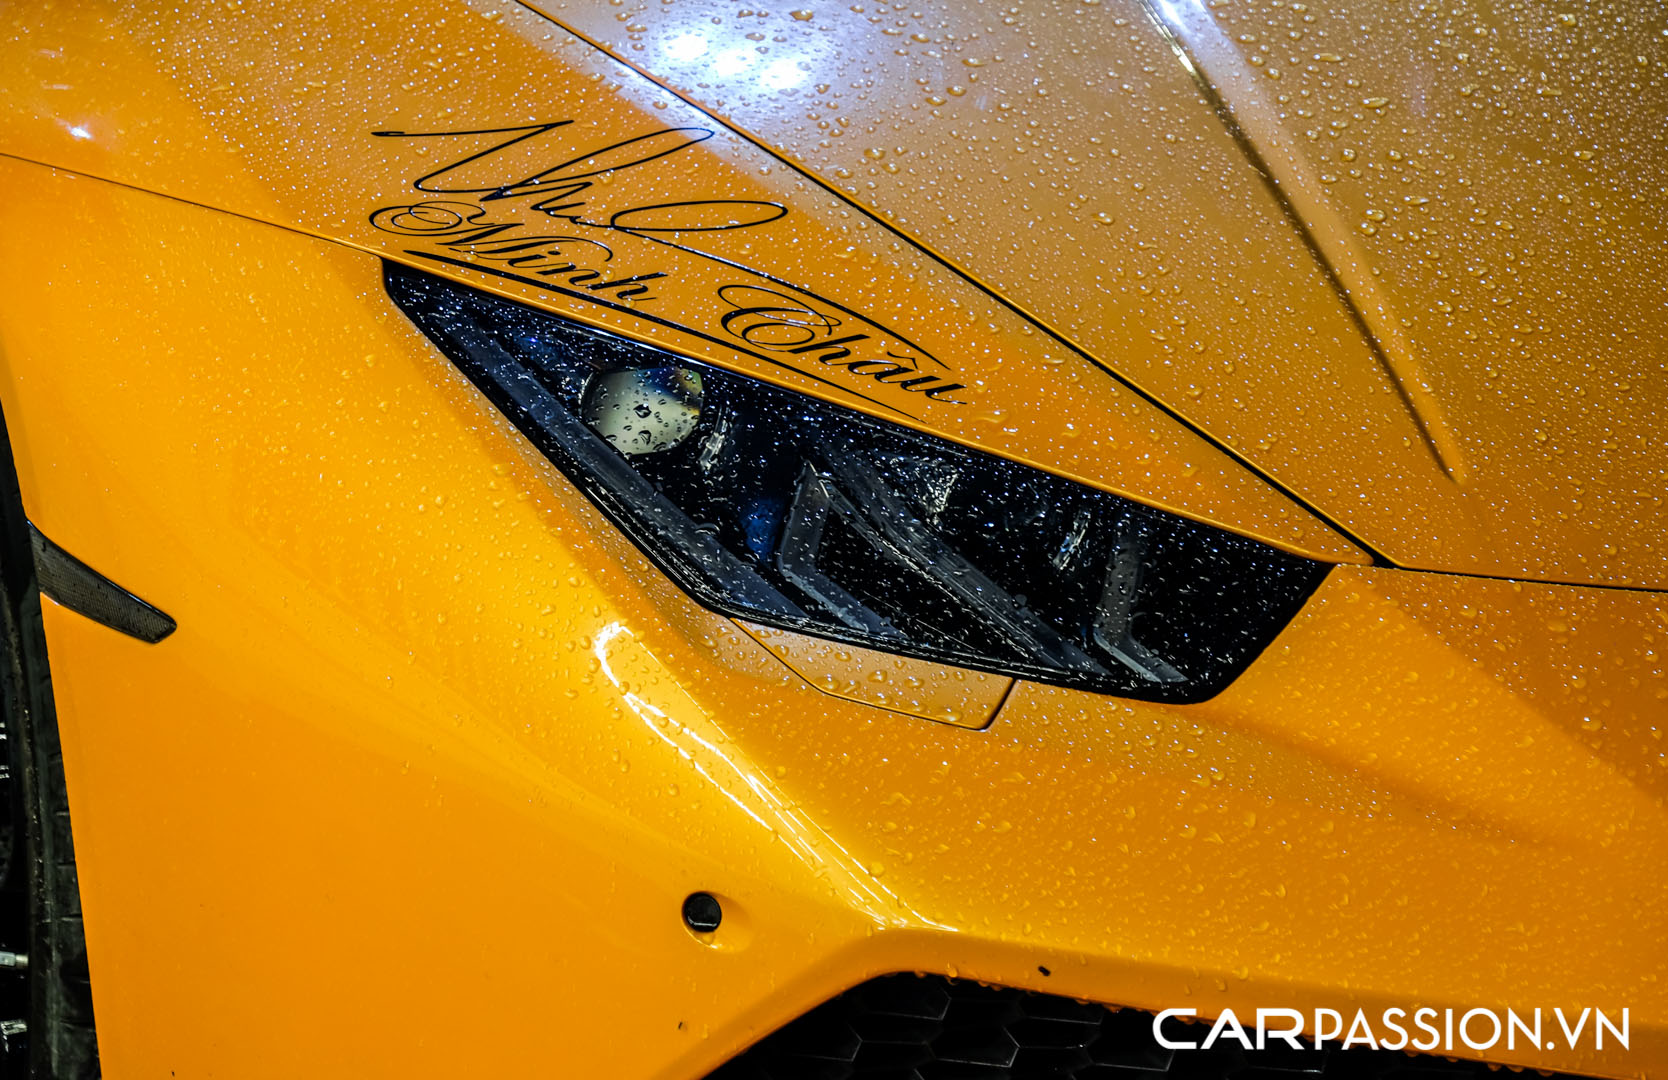 CP-Bộ đôi Lamborghini Huracan độ độc đáo24.jpg